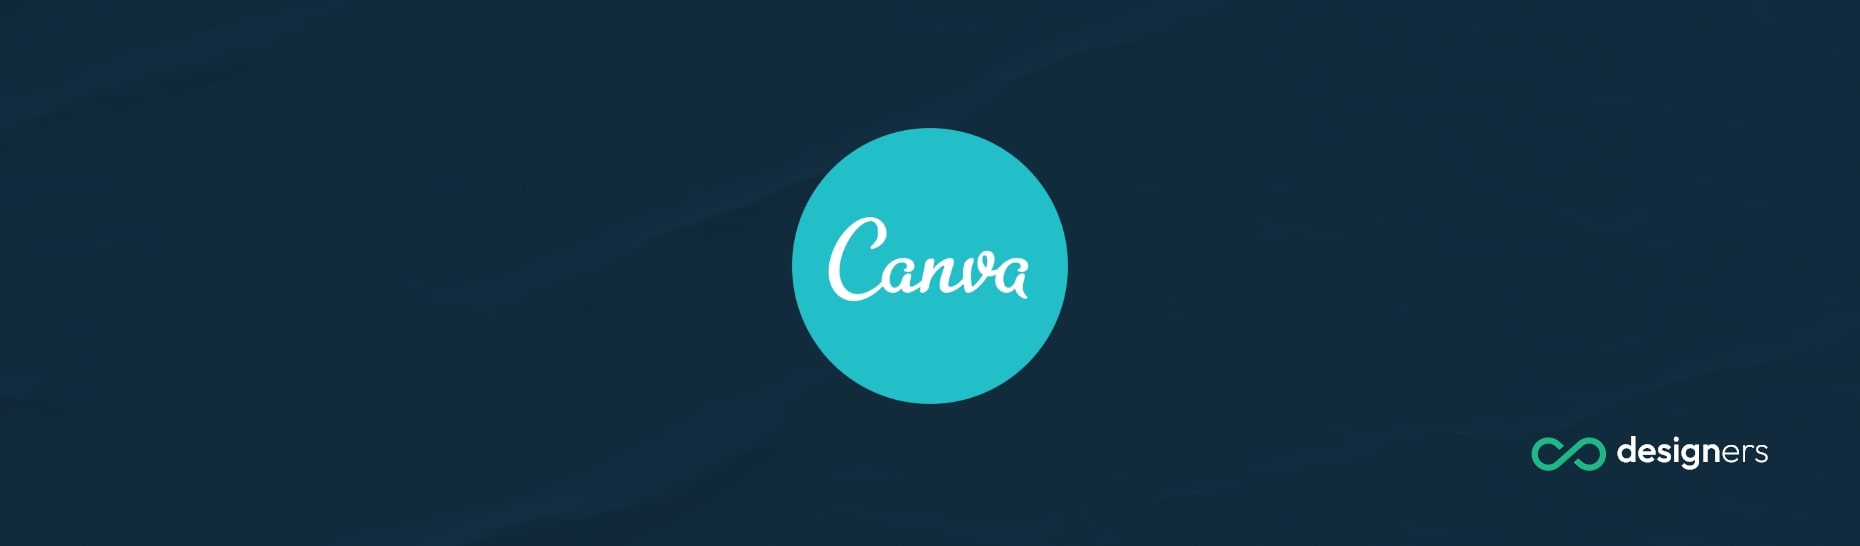 How Do I Access Canva Pro?